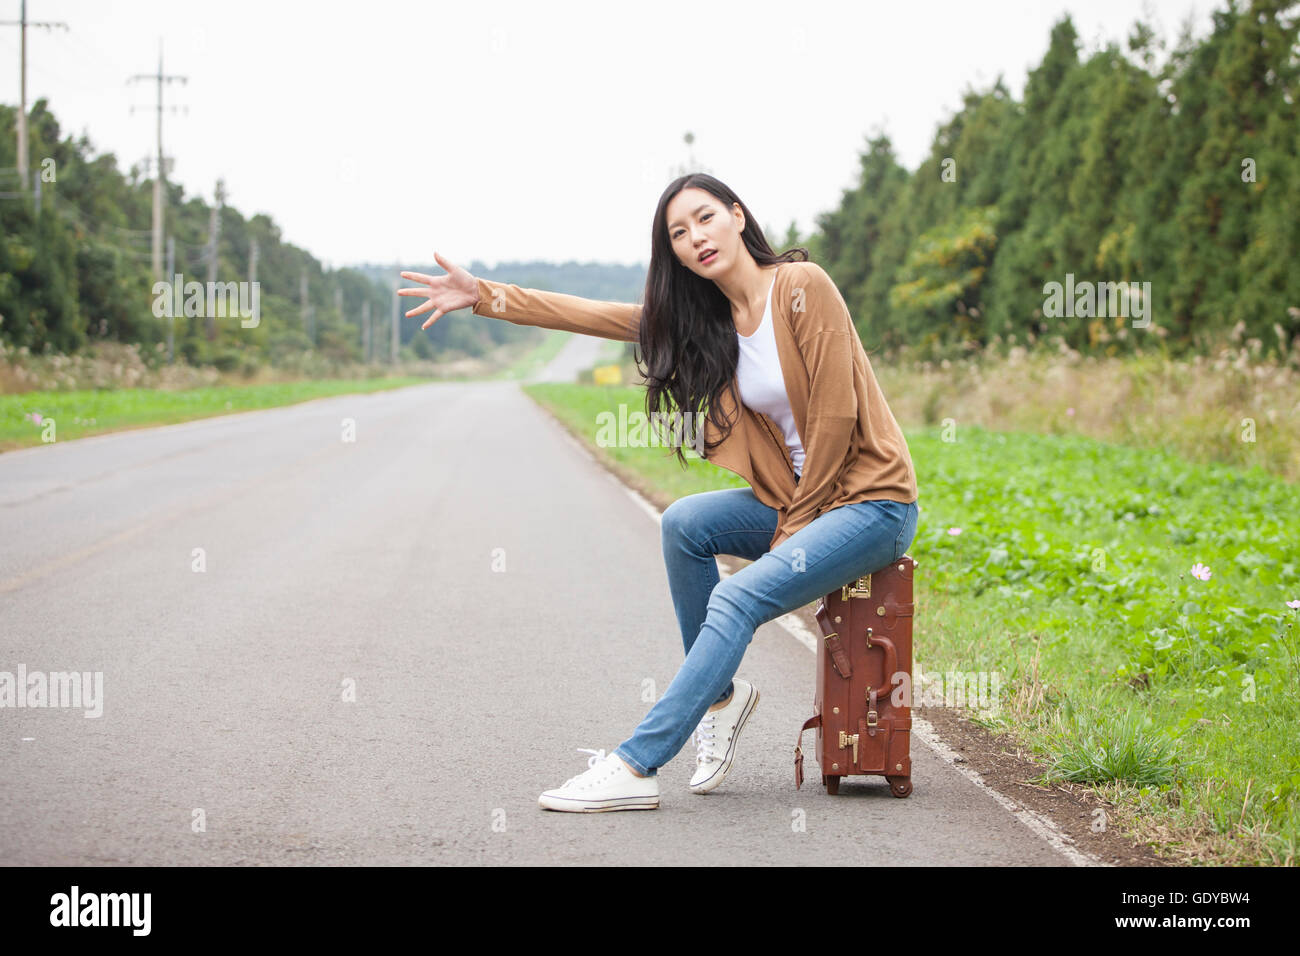 Junge Frau sitzt auf einem Träger und versucht, eine Mitfahrgelegenheit auf einer Straße Stockfoto